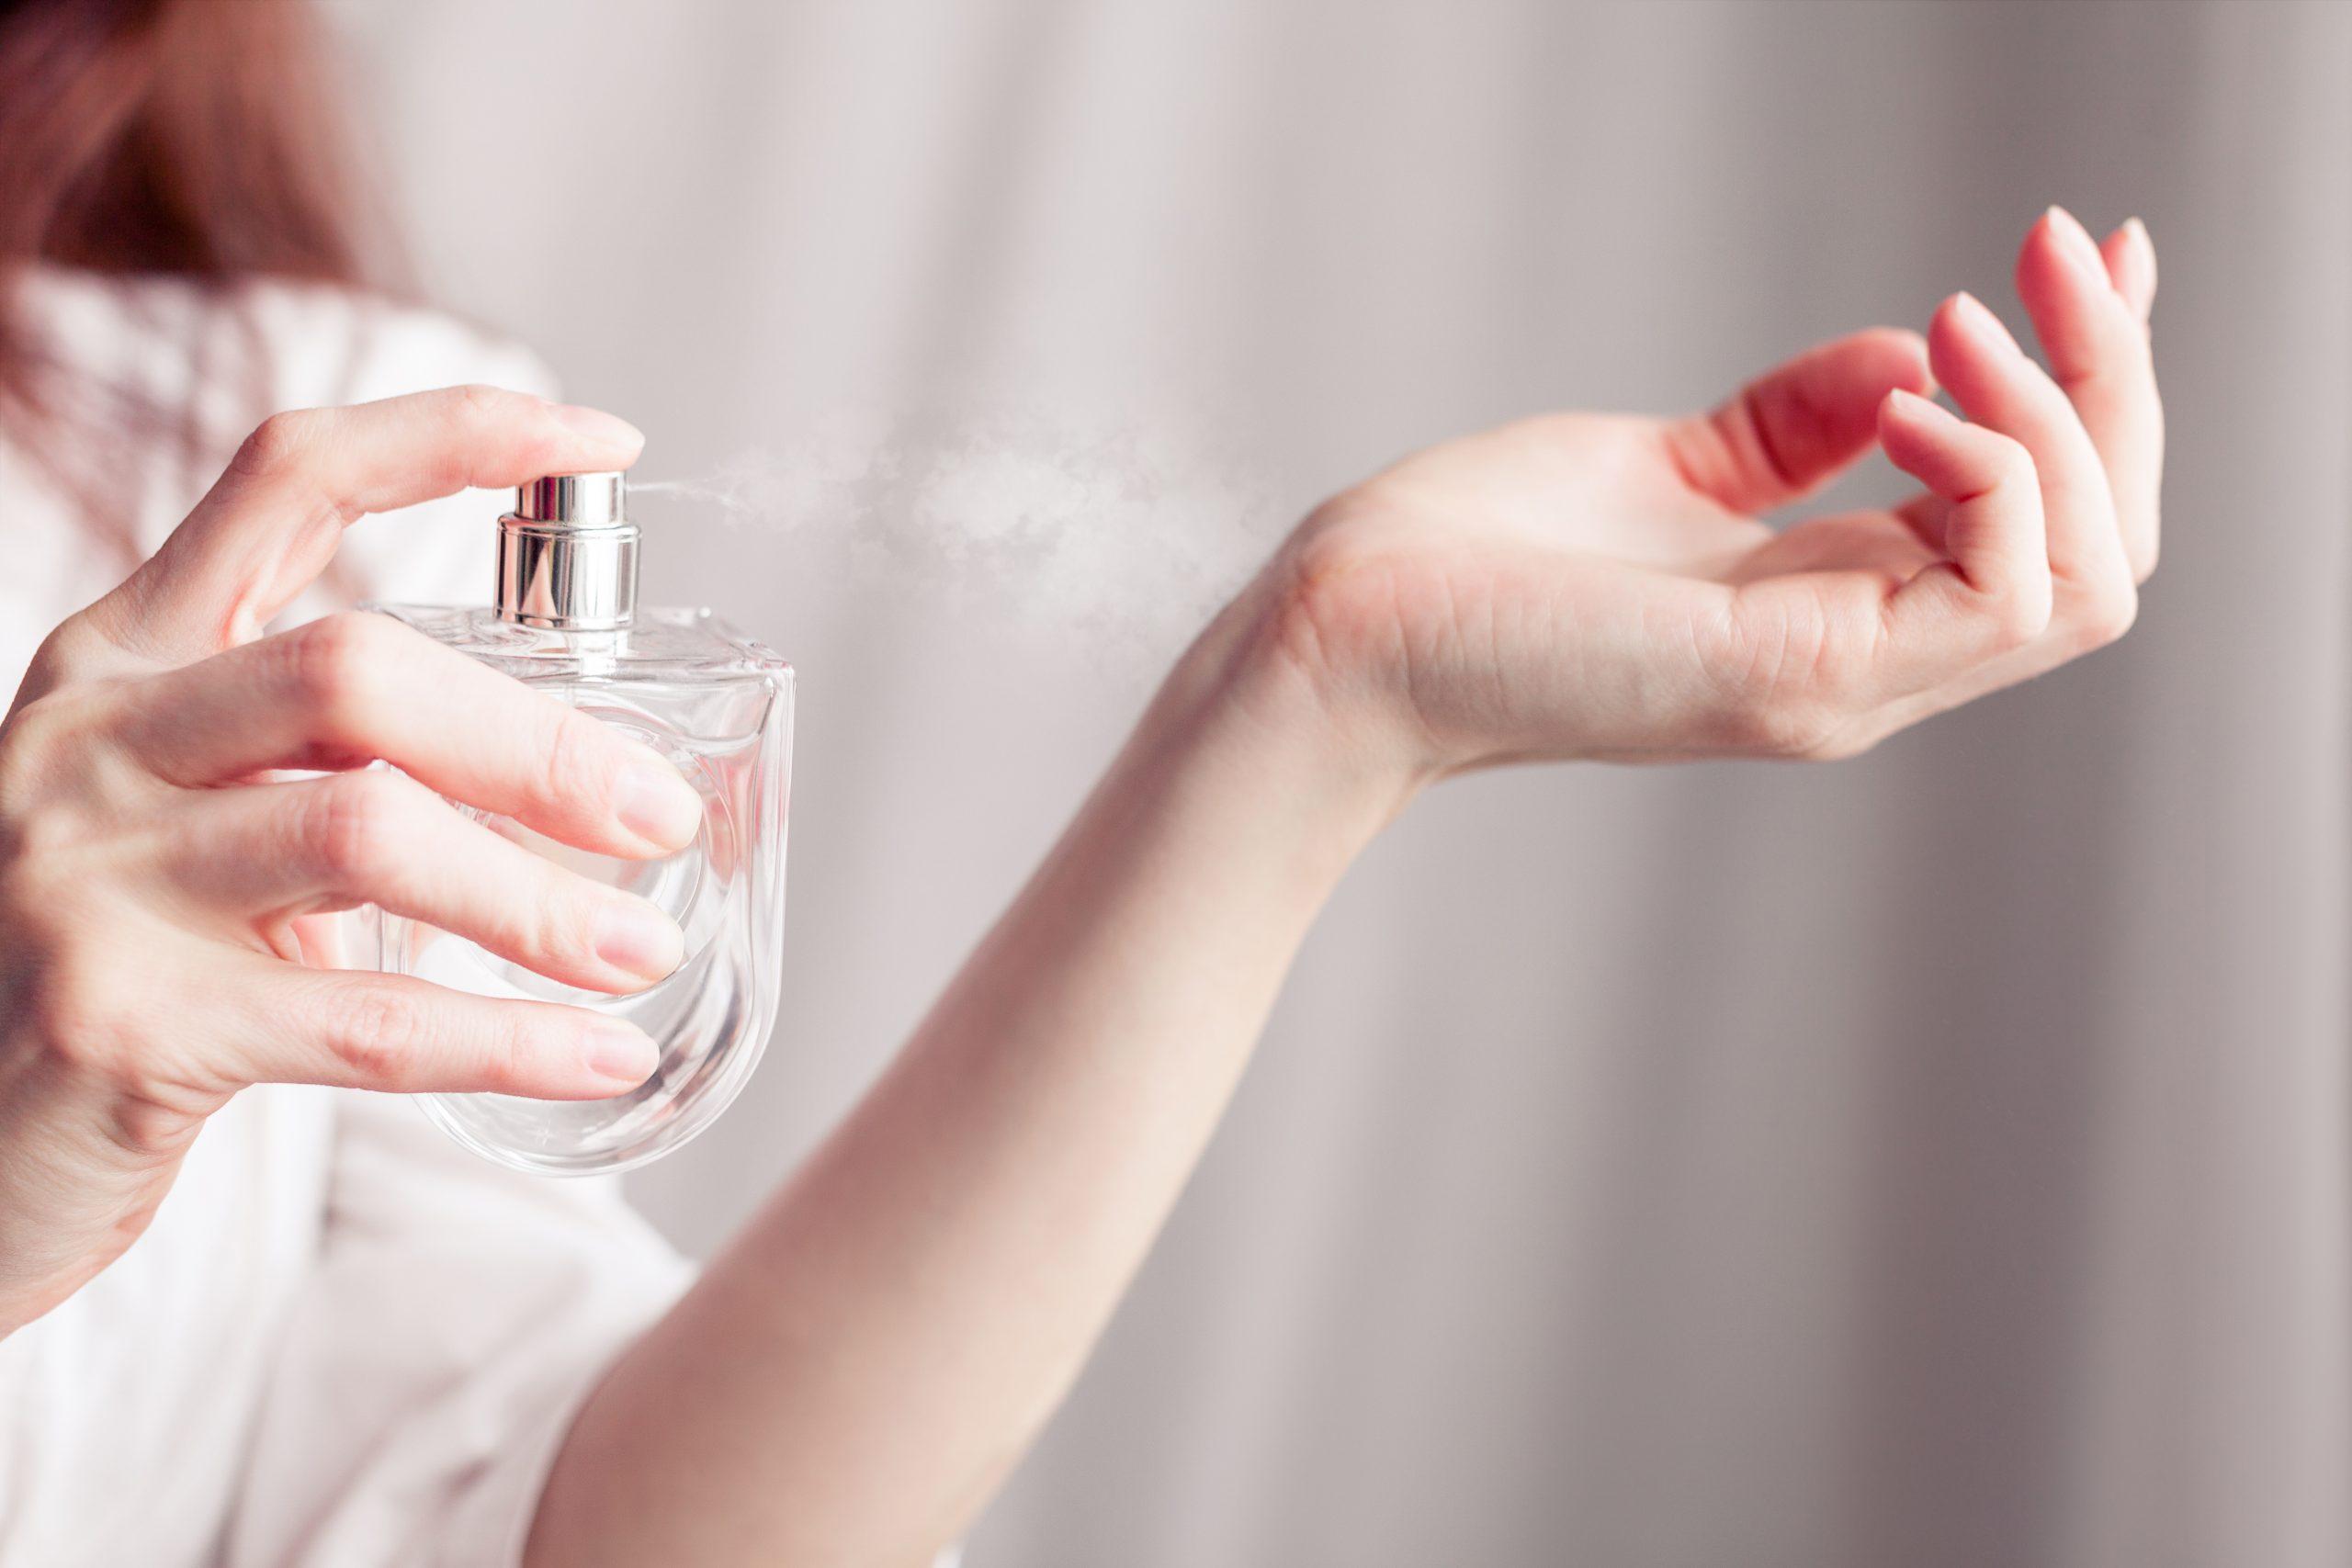 Odličan trik za testiranje parfema u trgovini